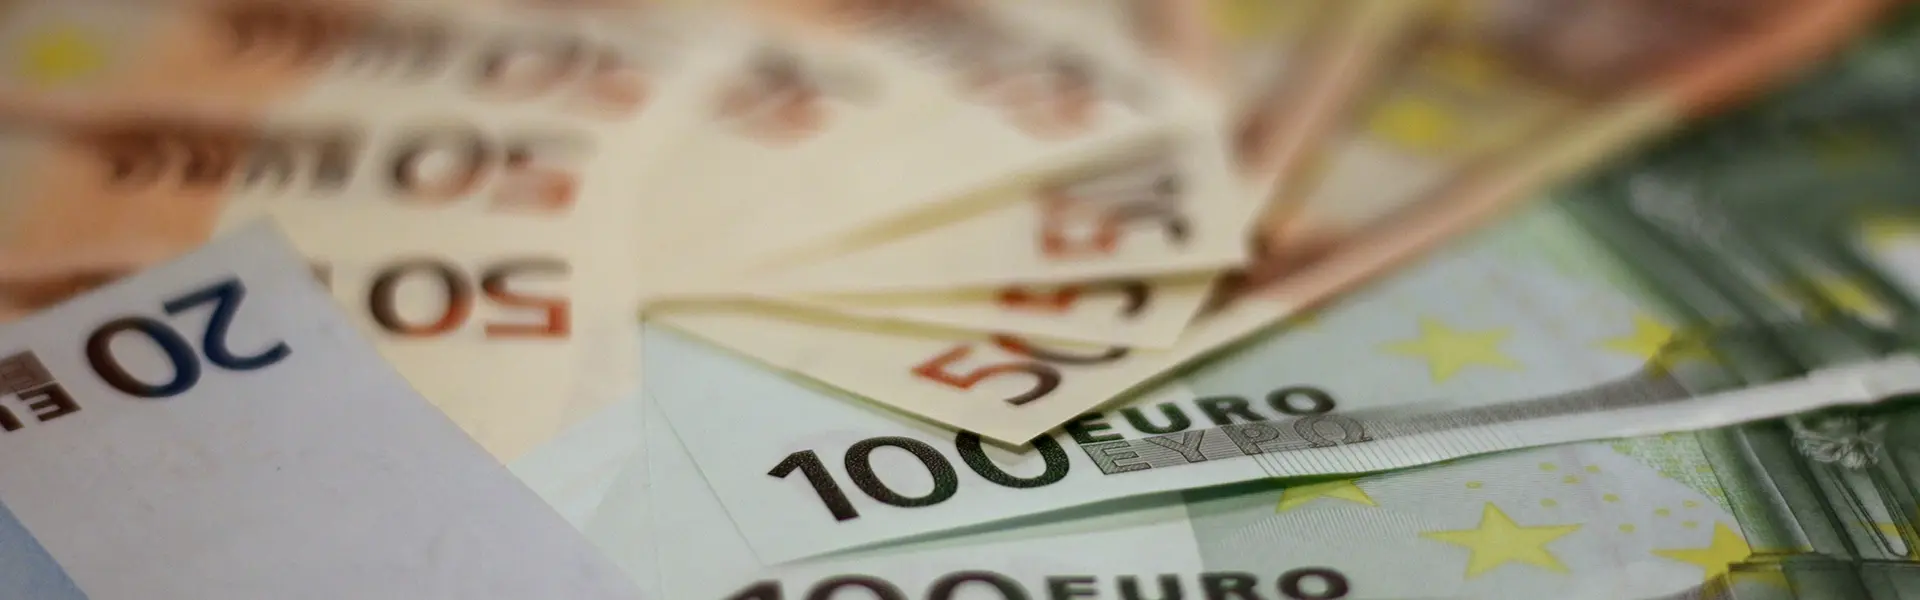 75 millones de euros para el emprendimiento industrial a traves de las SGR ultimas noticias